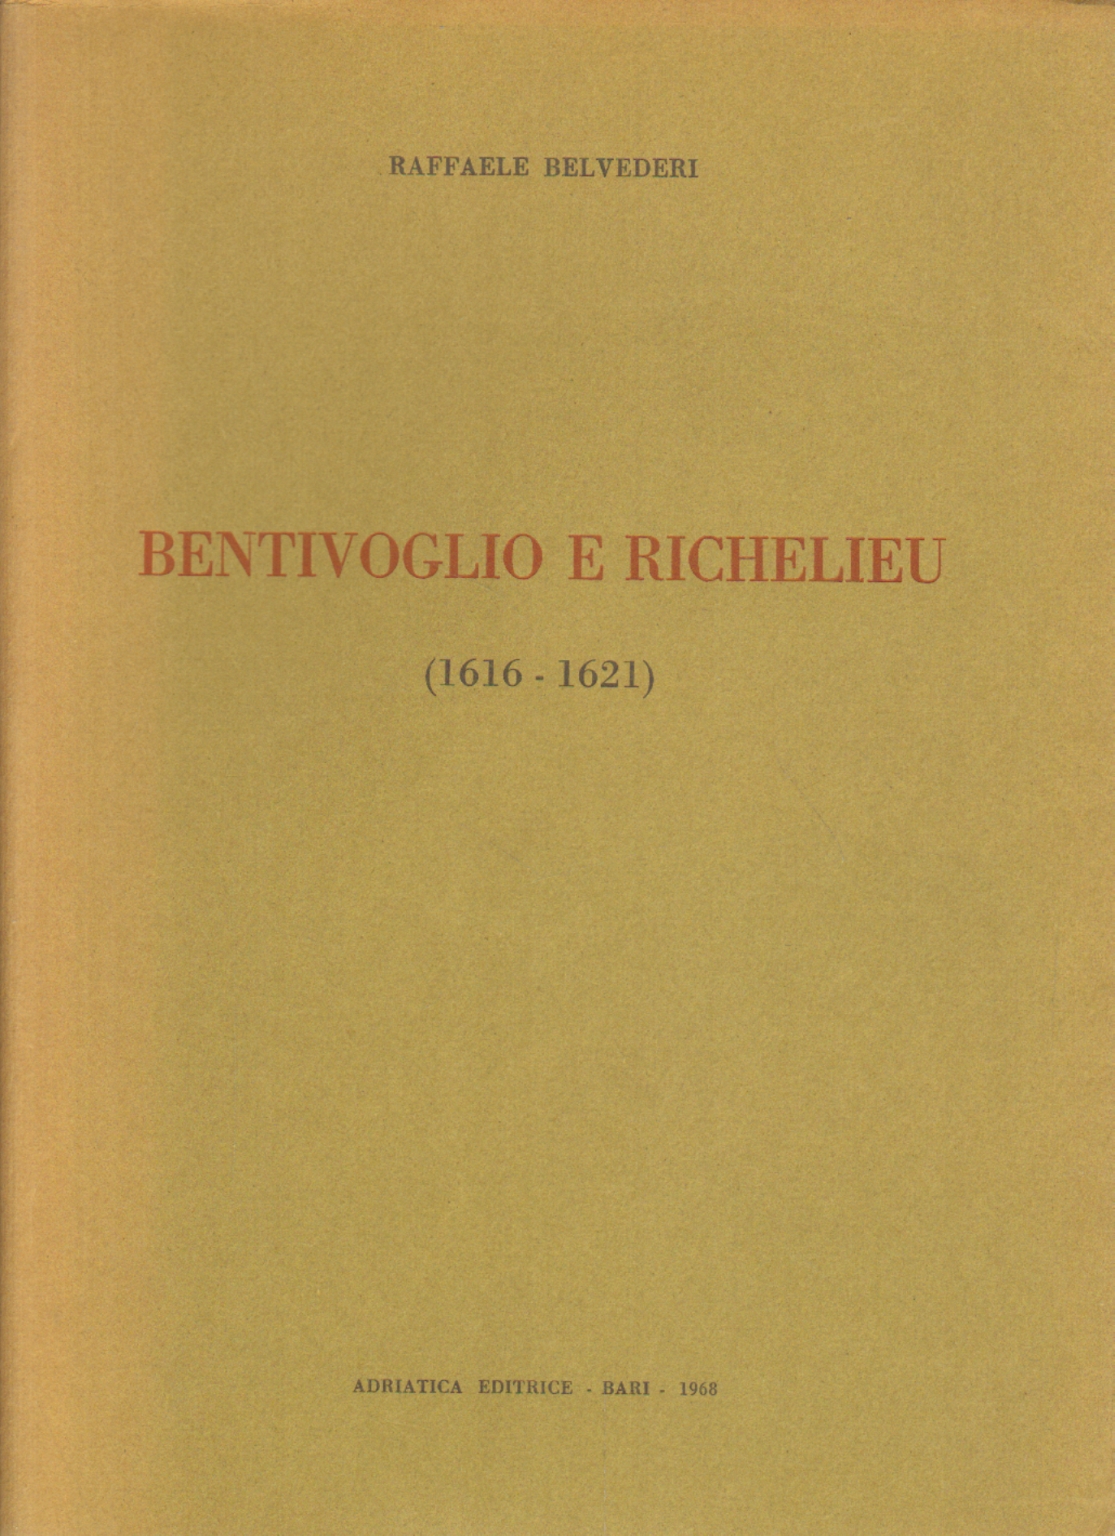 Bentivoglio und Richelieu